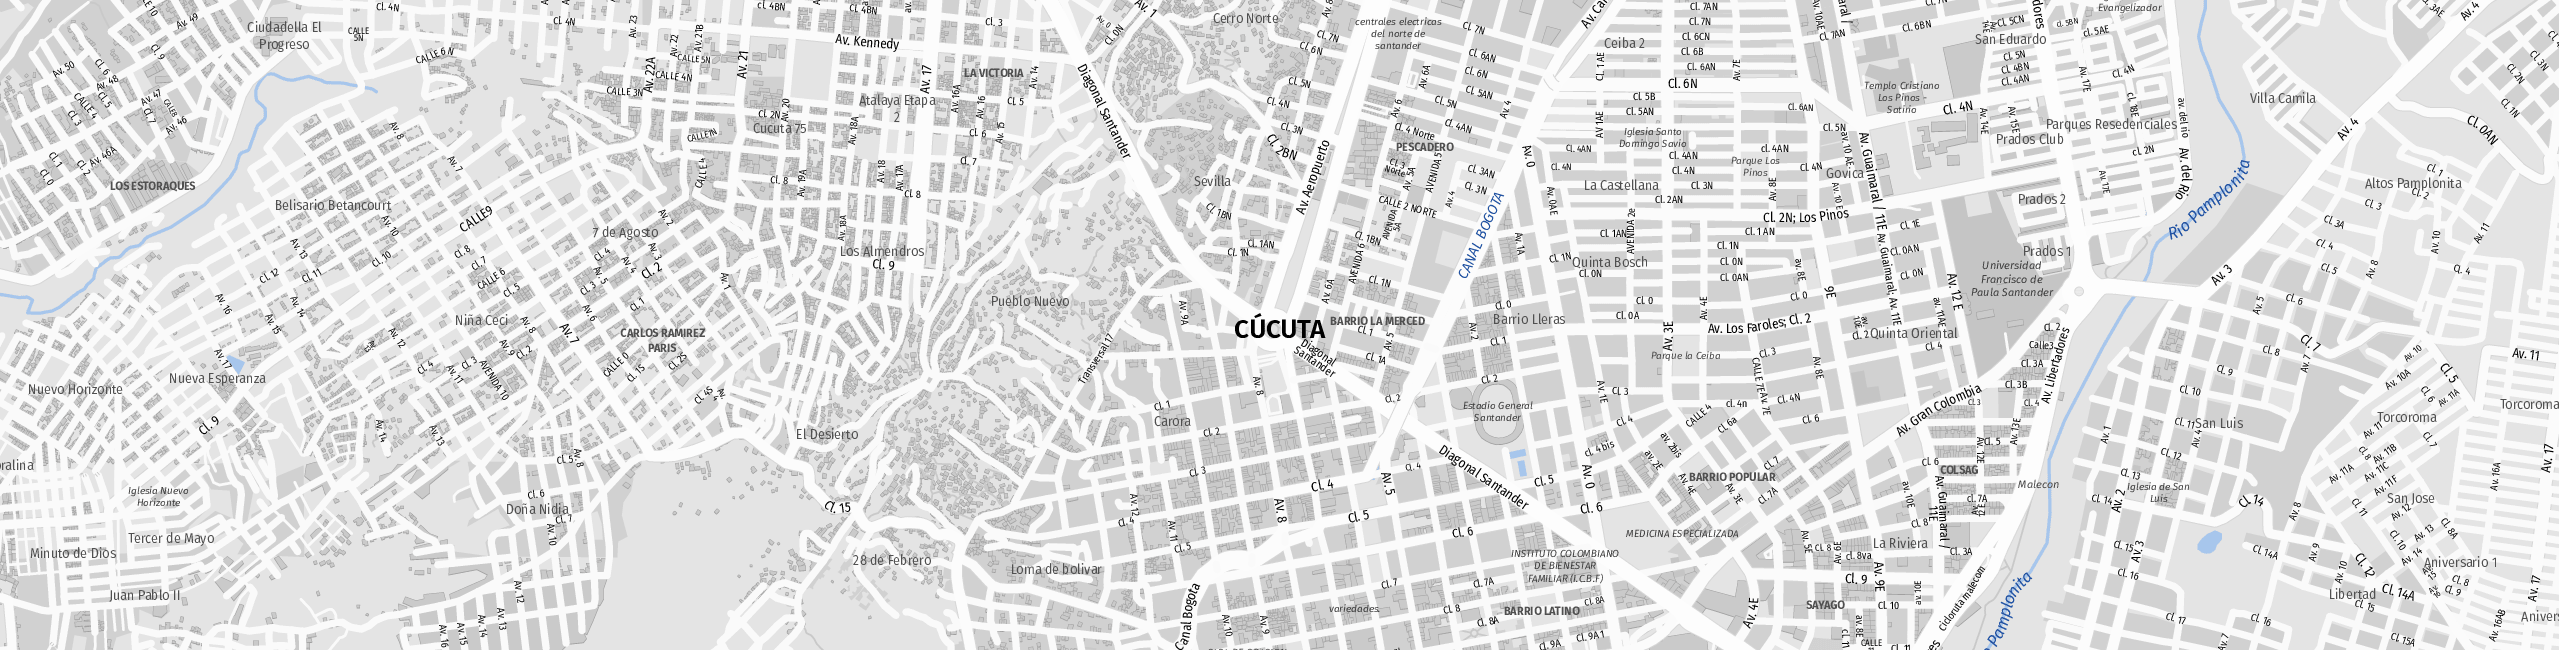 Stadtplan Cúcuta zum Downloaden.